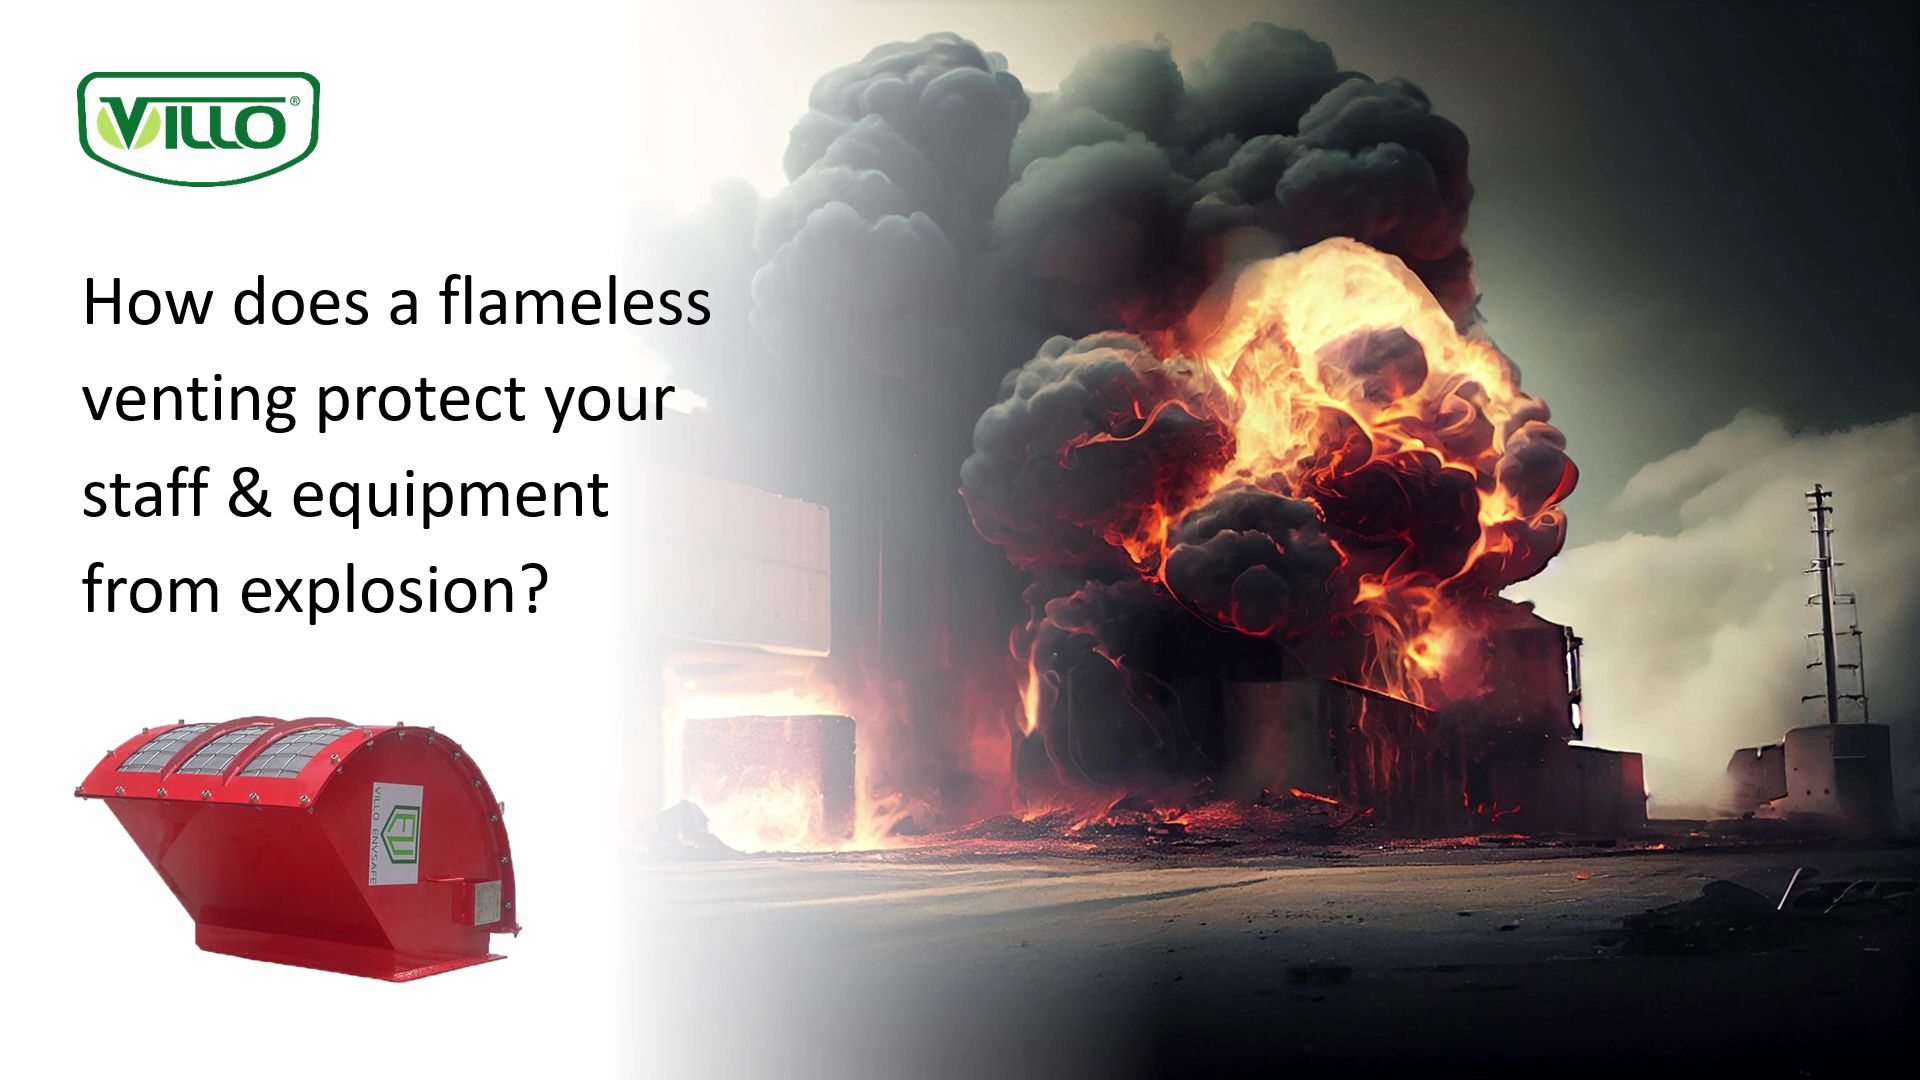 炎のない通気口は、スタッフと機器を爆発からどのように保護しますか?